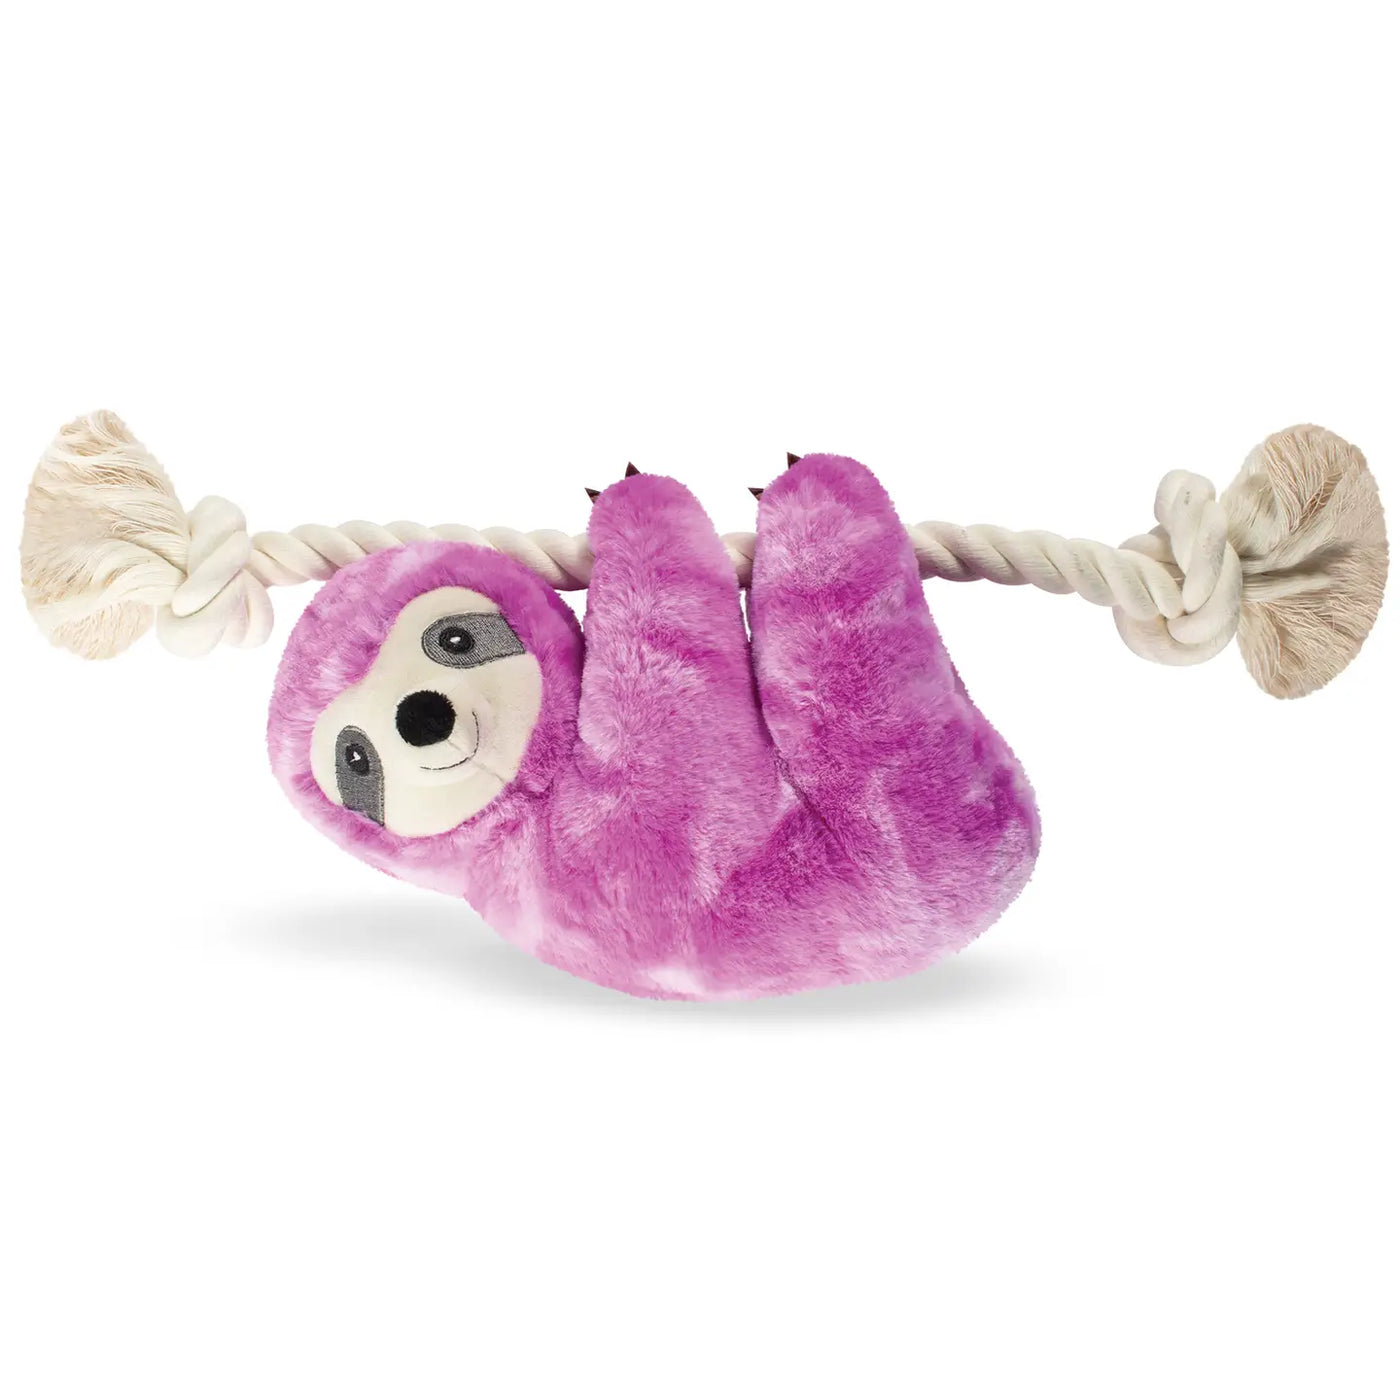 Fringe Plush Dog Toy - Purple Sloth On A Rope